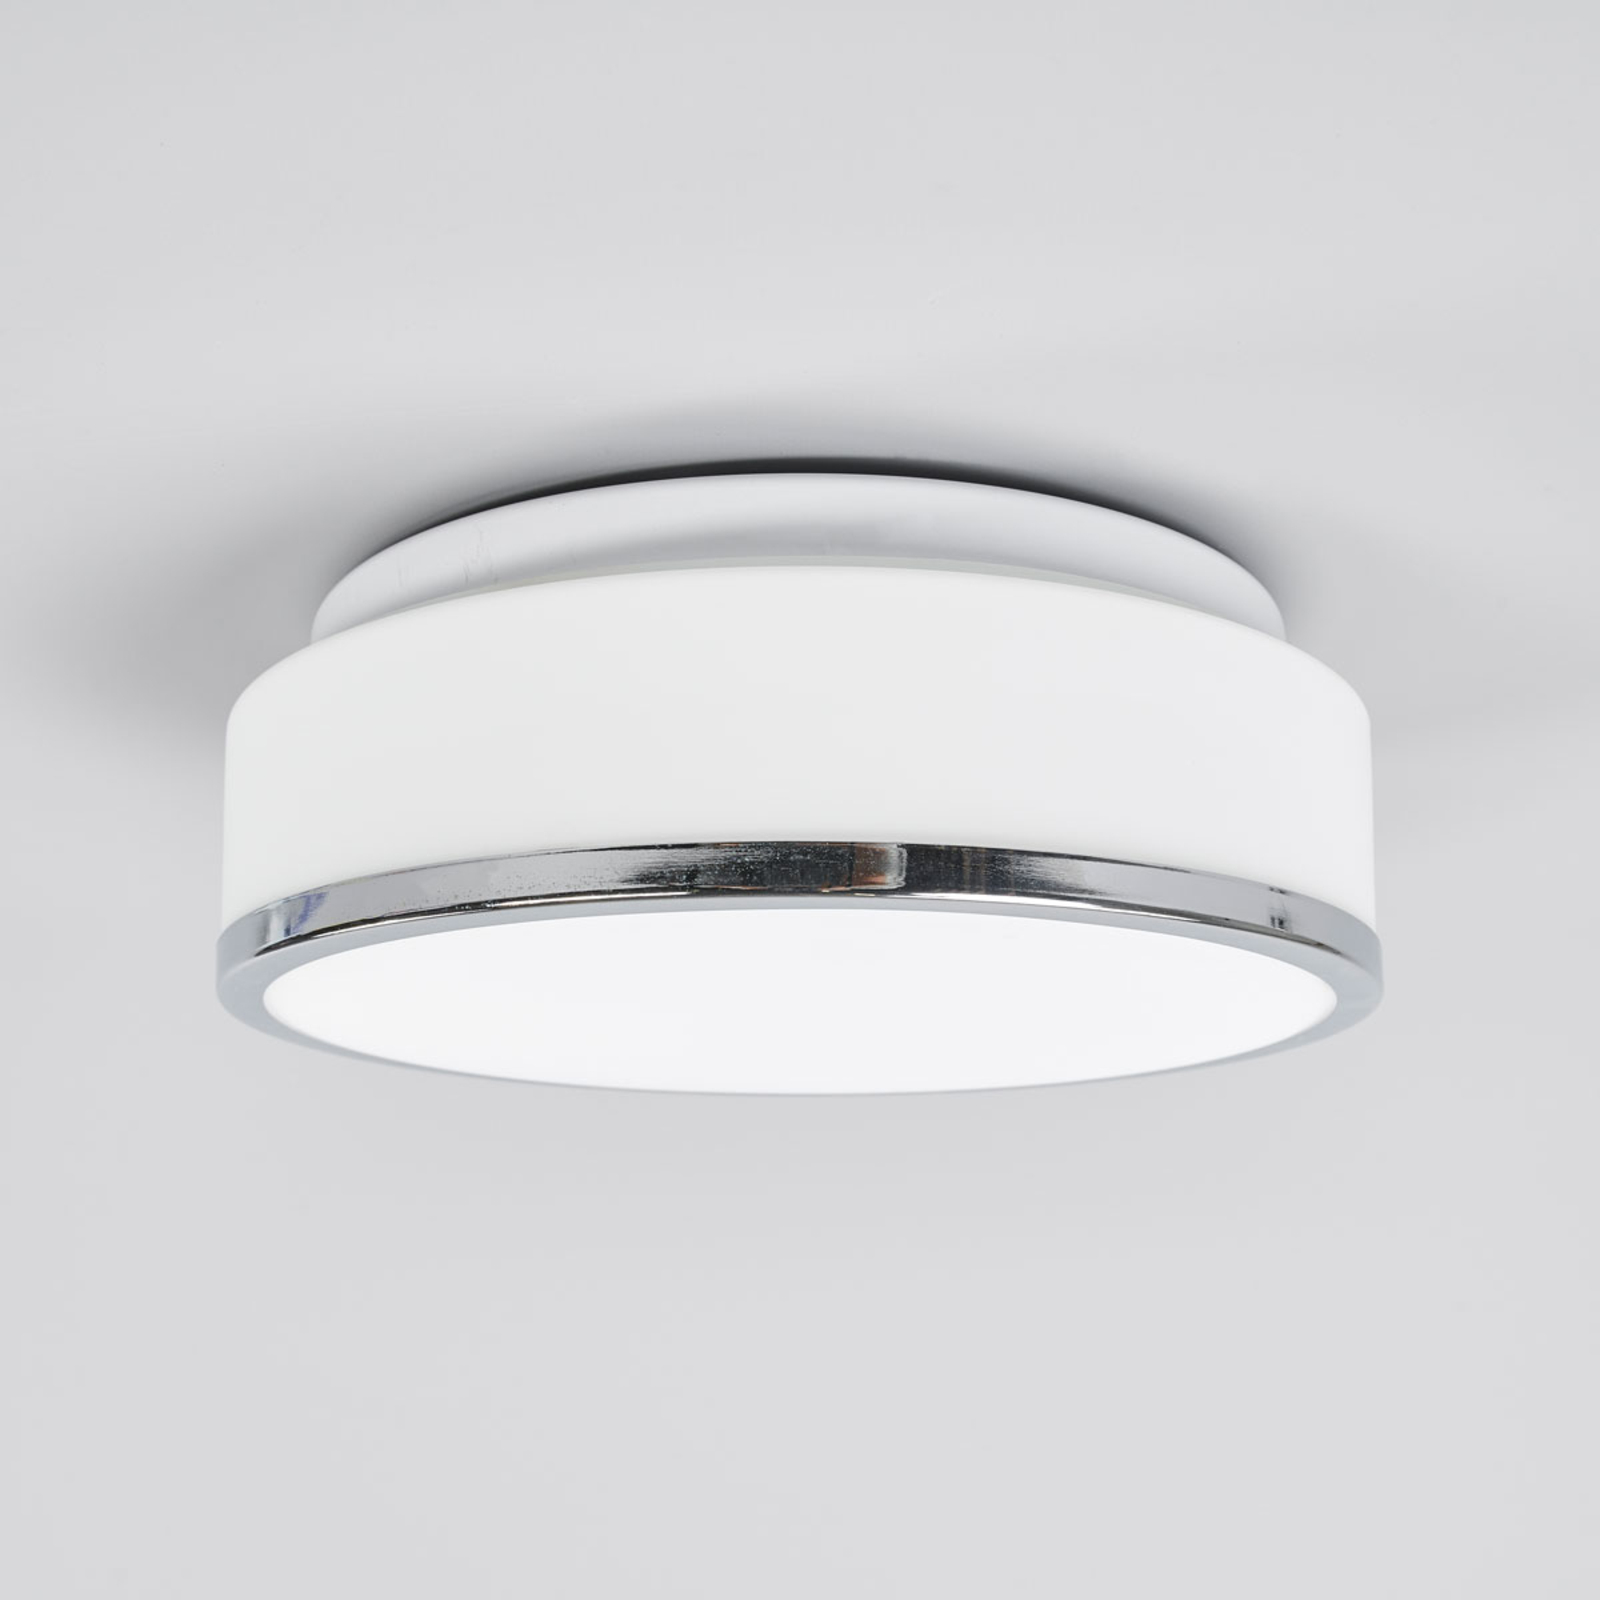 Flush IP44 ceiling light, Ø 28cm, chrome